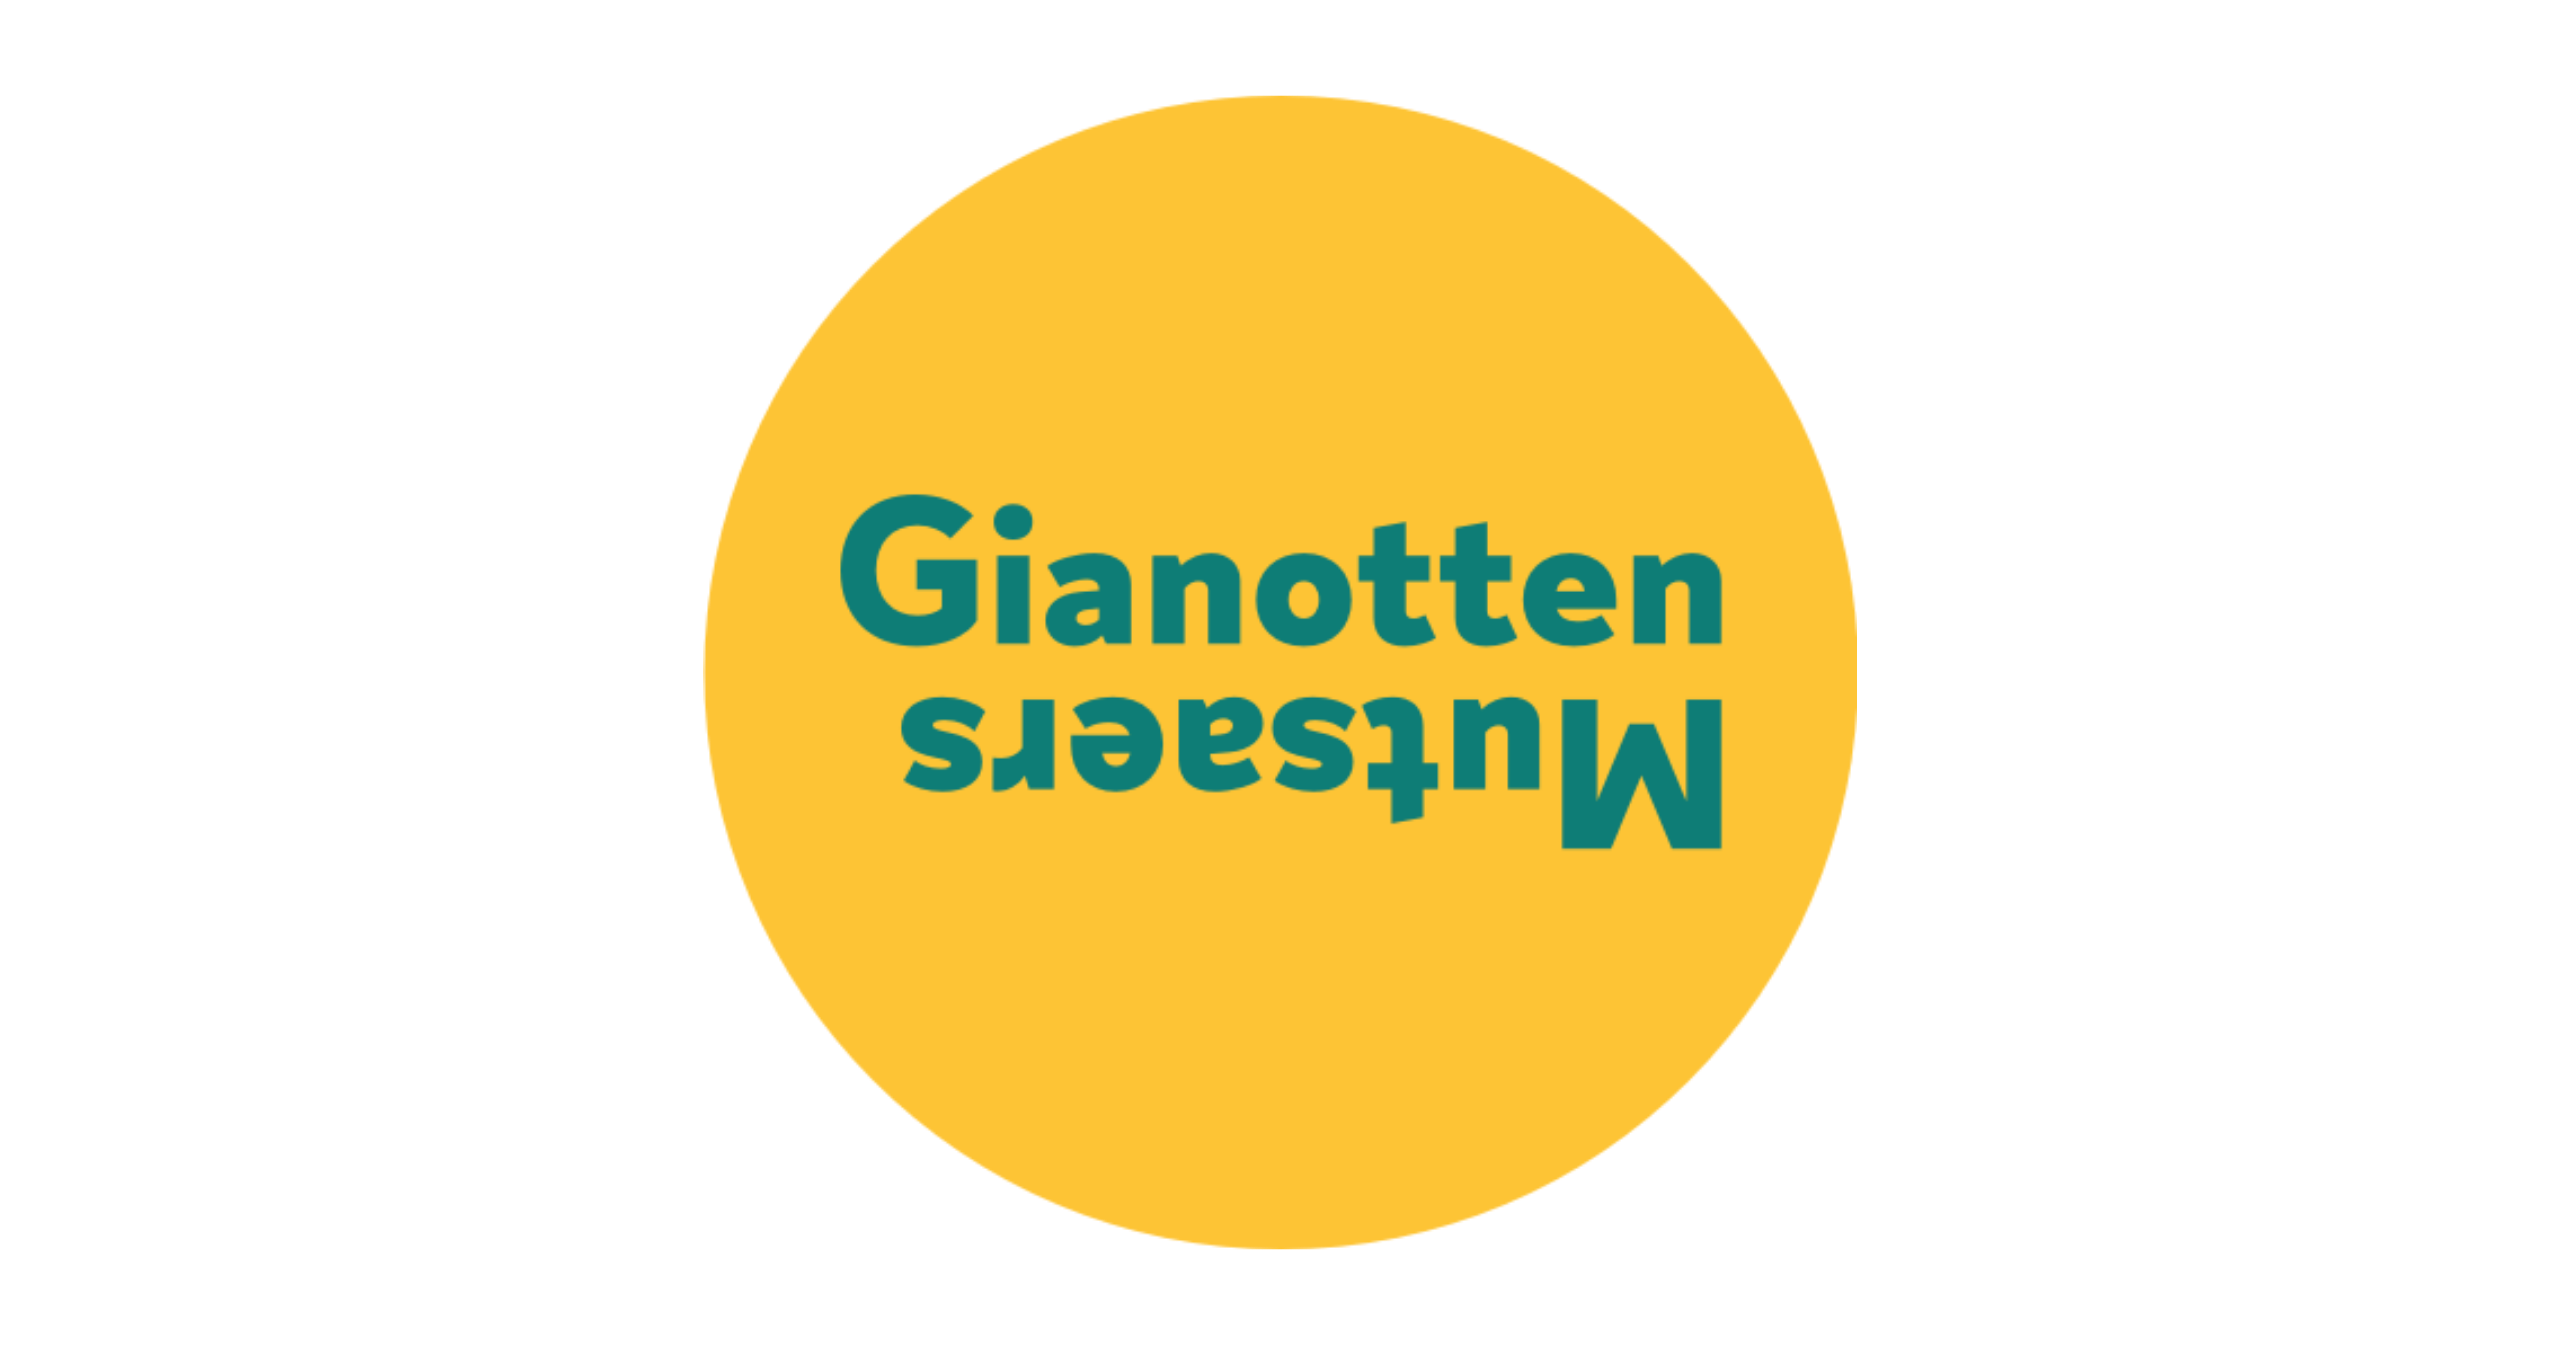 Gianotten Mutsaers